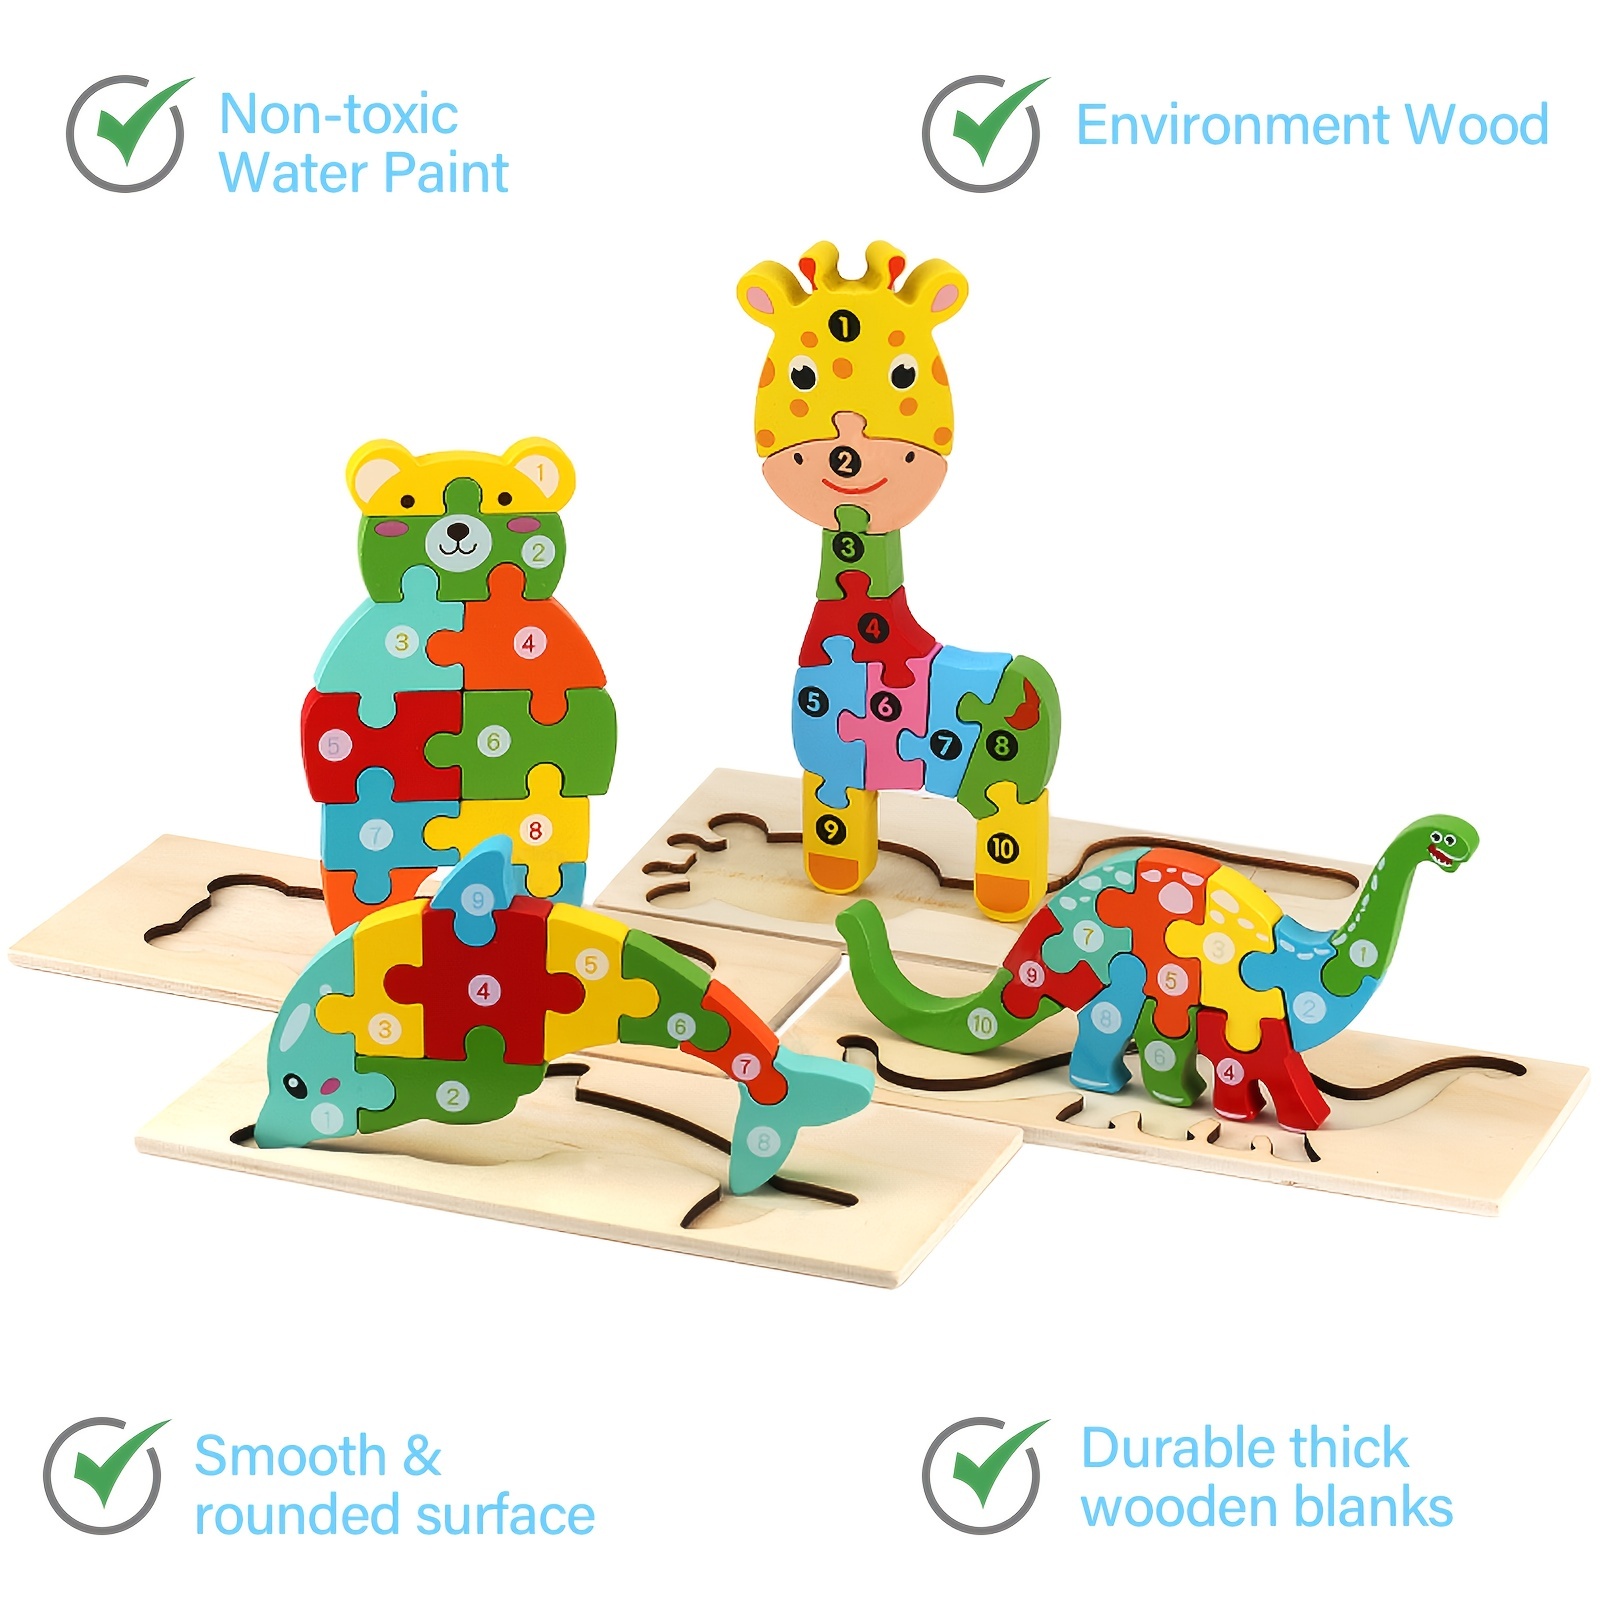 Quebra-criança para crianças - Animais Quebra-cabeça Jogos classificação -  Brinquedos aprendizagem para crianças crianças meninos meninas 4 a 6